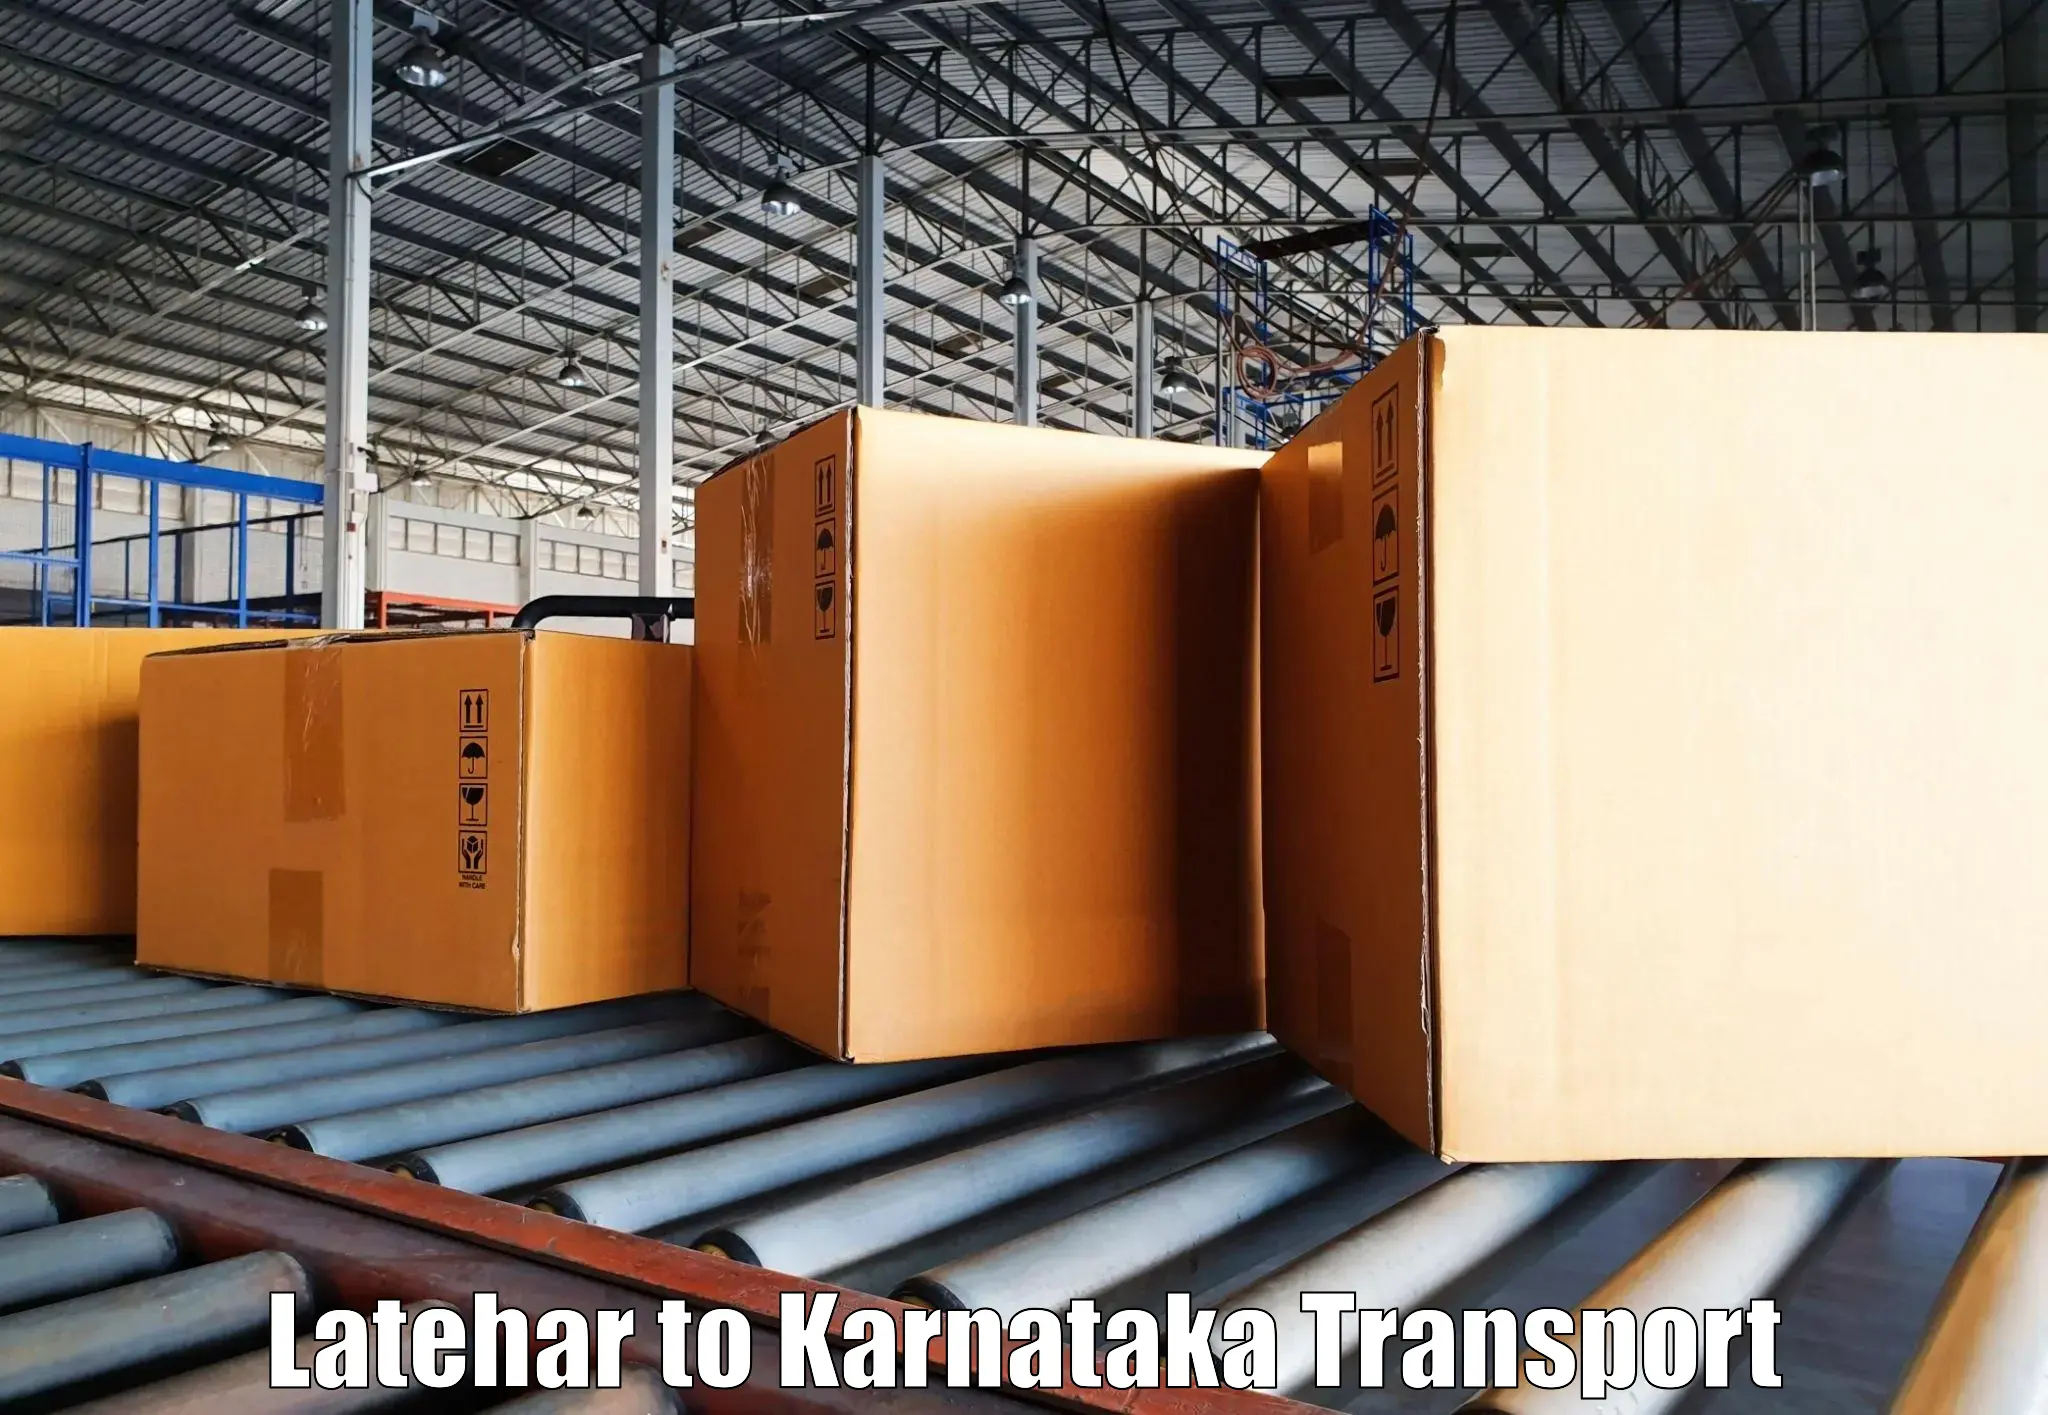 Commercial transport service Latehar to Chikkaballapur